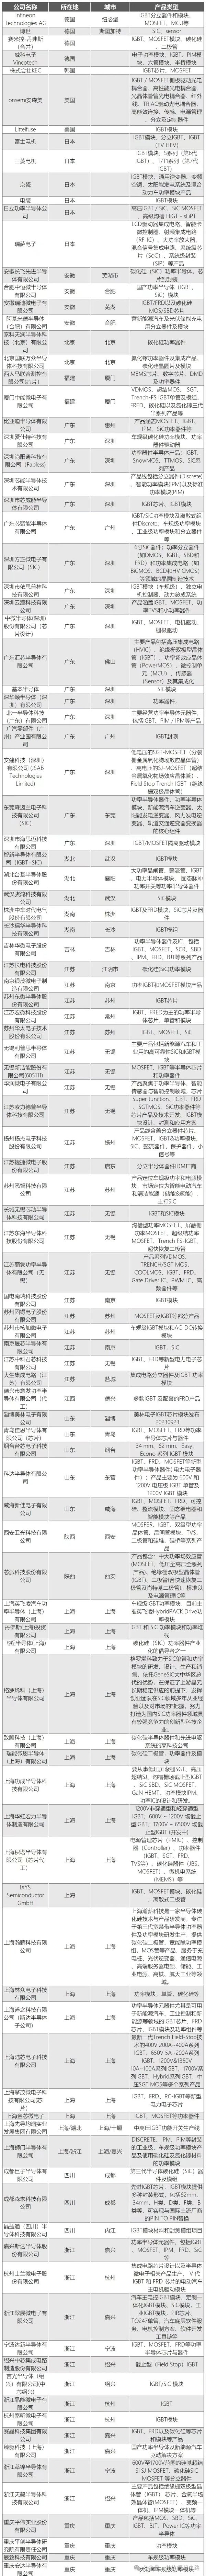 全球IGBT/碳化硅模块生产厂商概览